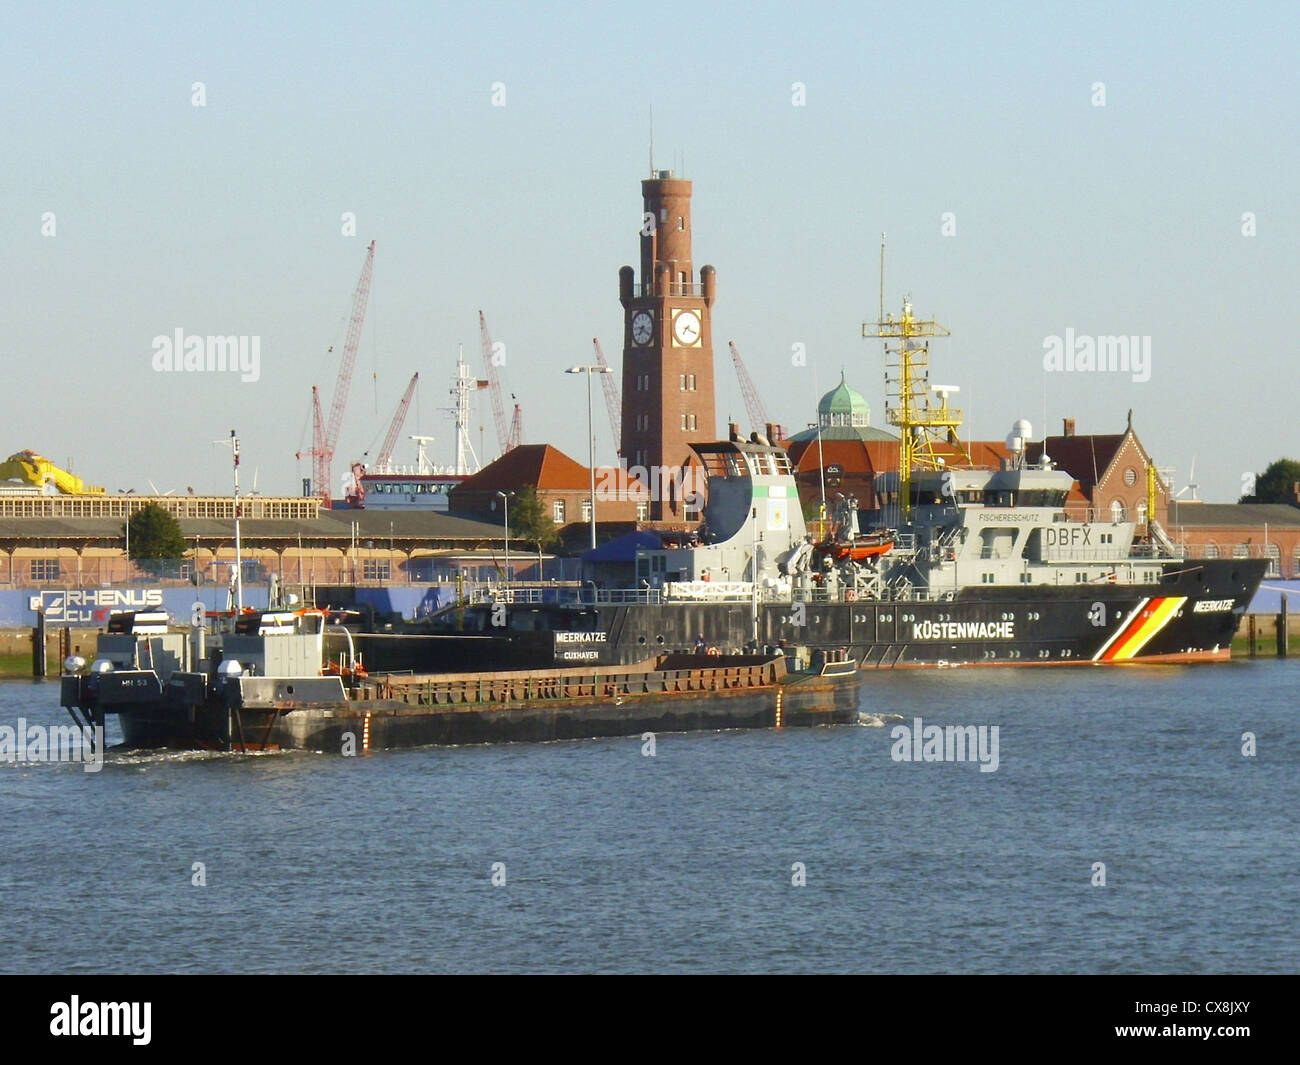 Le chaland automoteur '''hh 53''' (numéro MMSI 211247310) et le navire de contrôle de la pêche '''Meerkatze''' dans le port de Cuxhaven, Allemagne Banque D'Images